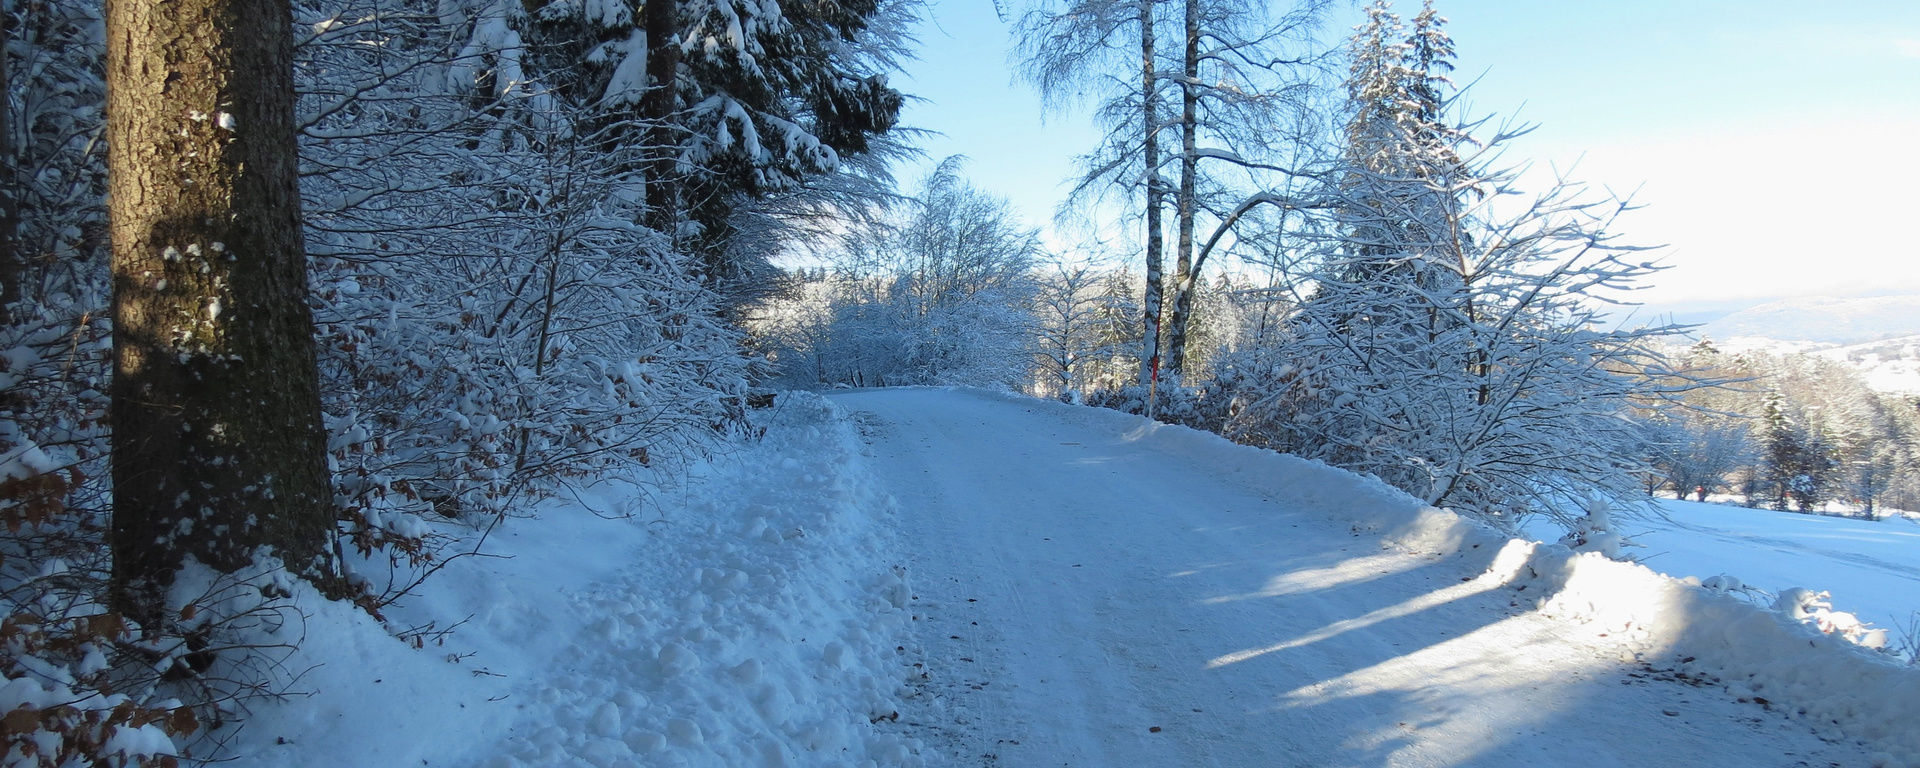 Verschneiter Wanderweg entlang des Waldes